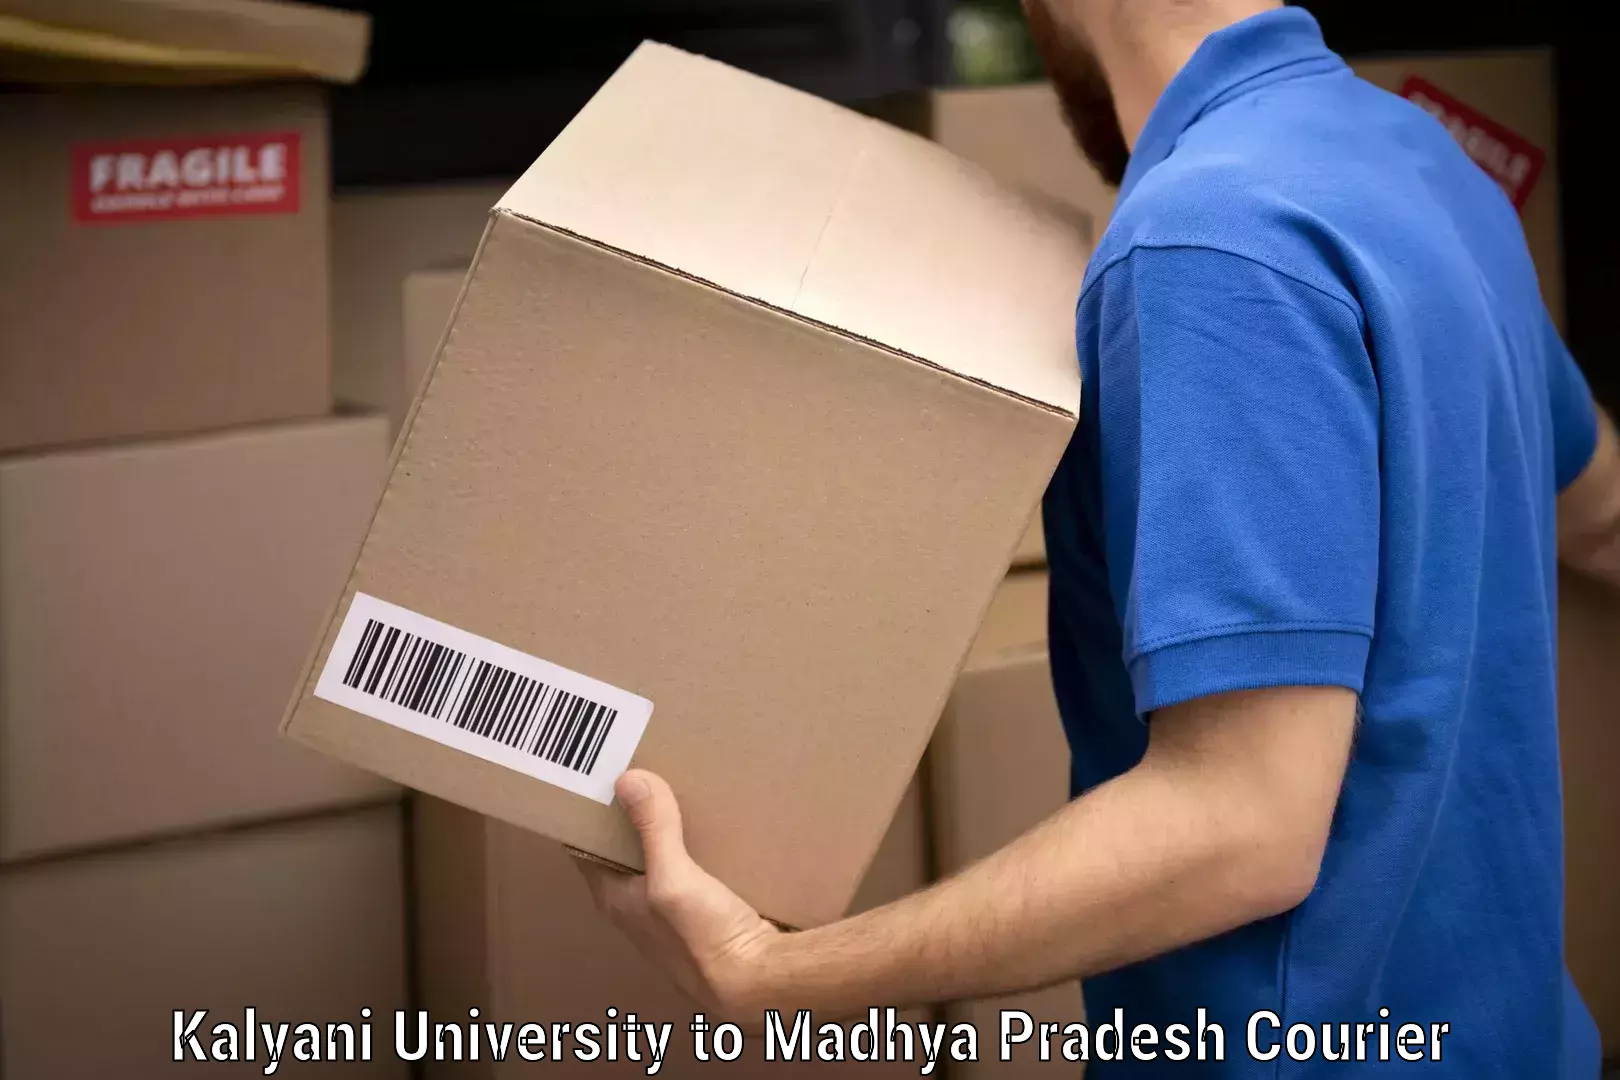 Professional furniture transport Kalyani University to Madhya Pradesh